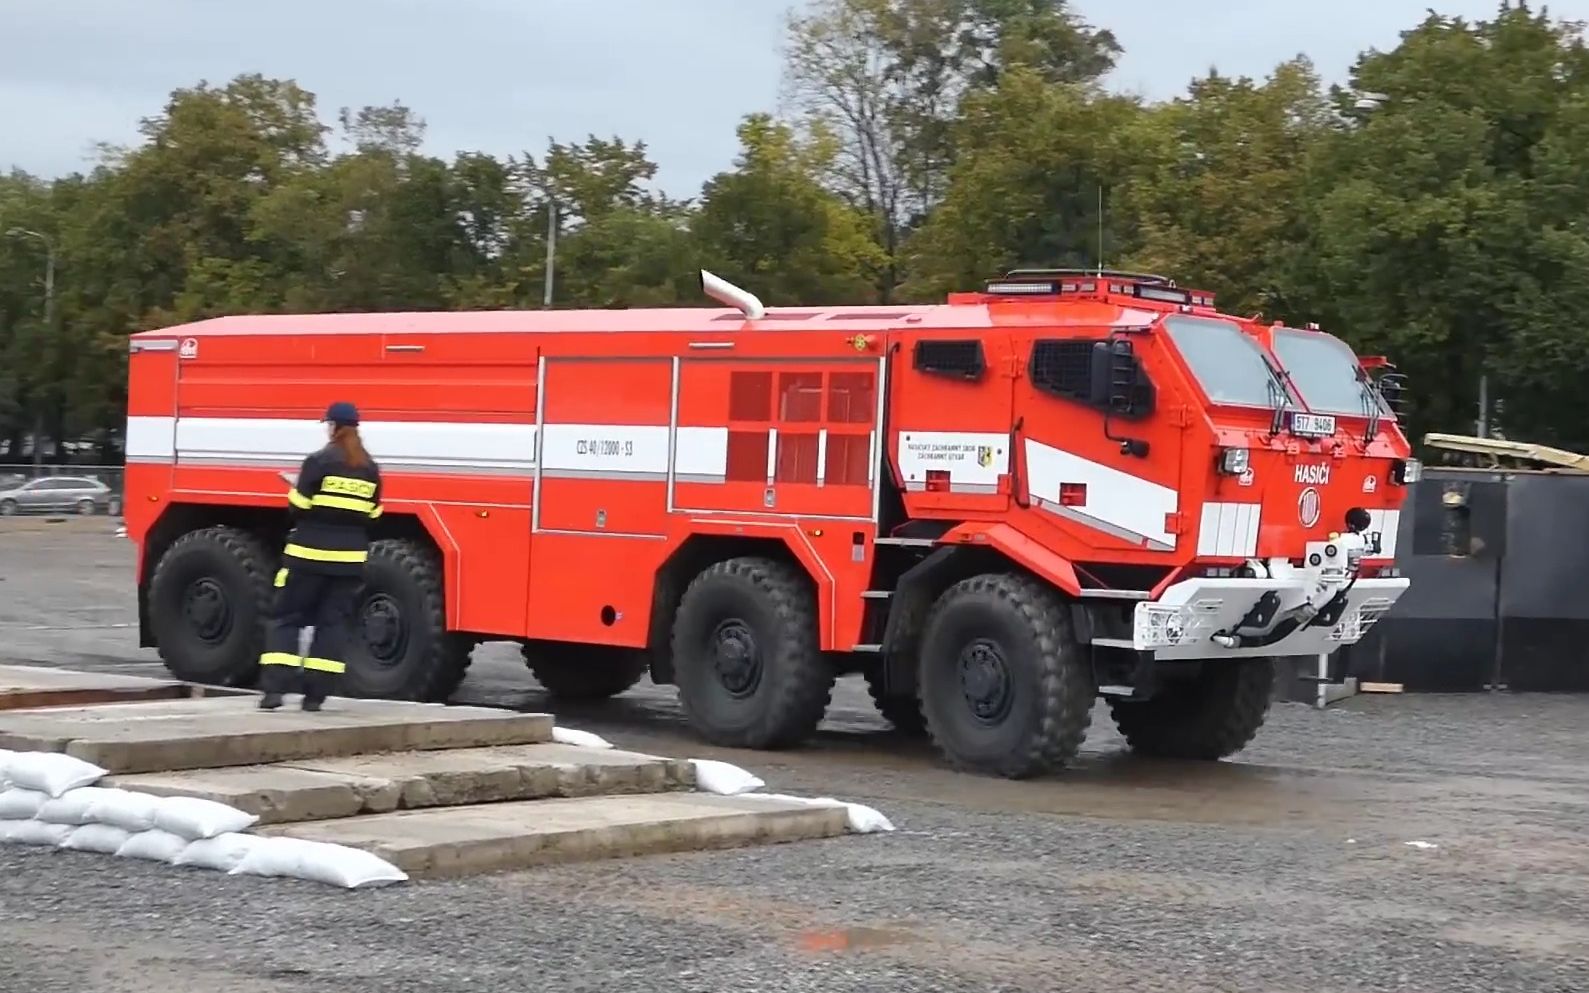 【载具参考】- TATRA公司的 CV40 消防车展示